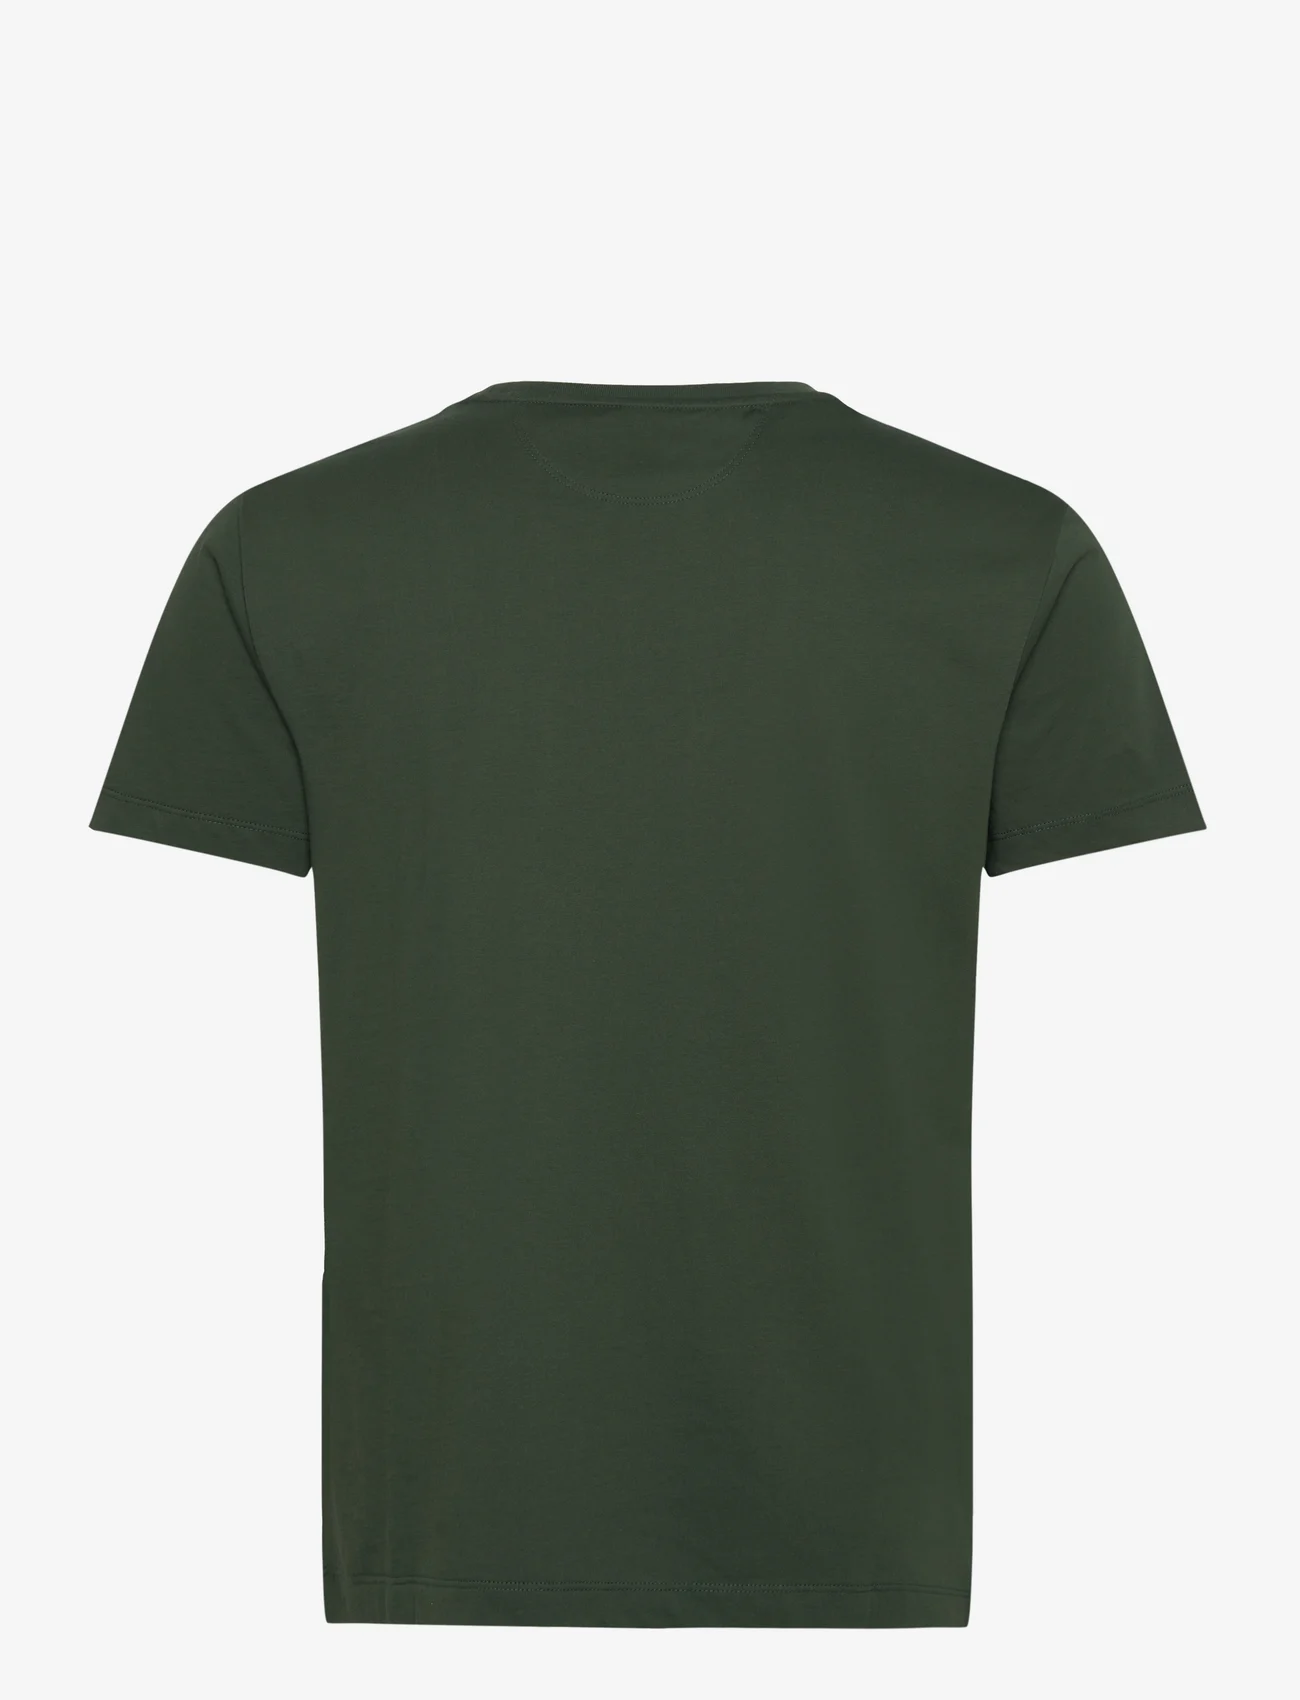 Hackett London - PIMA COTTON TEE - podstawowe koszulki - dark green - 1